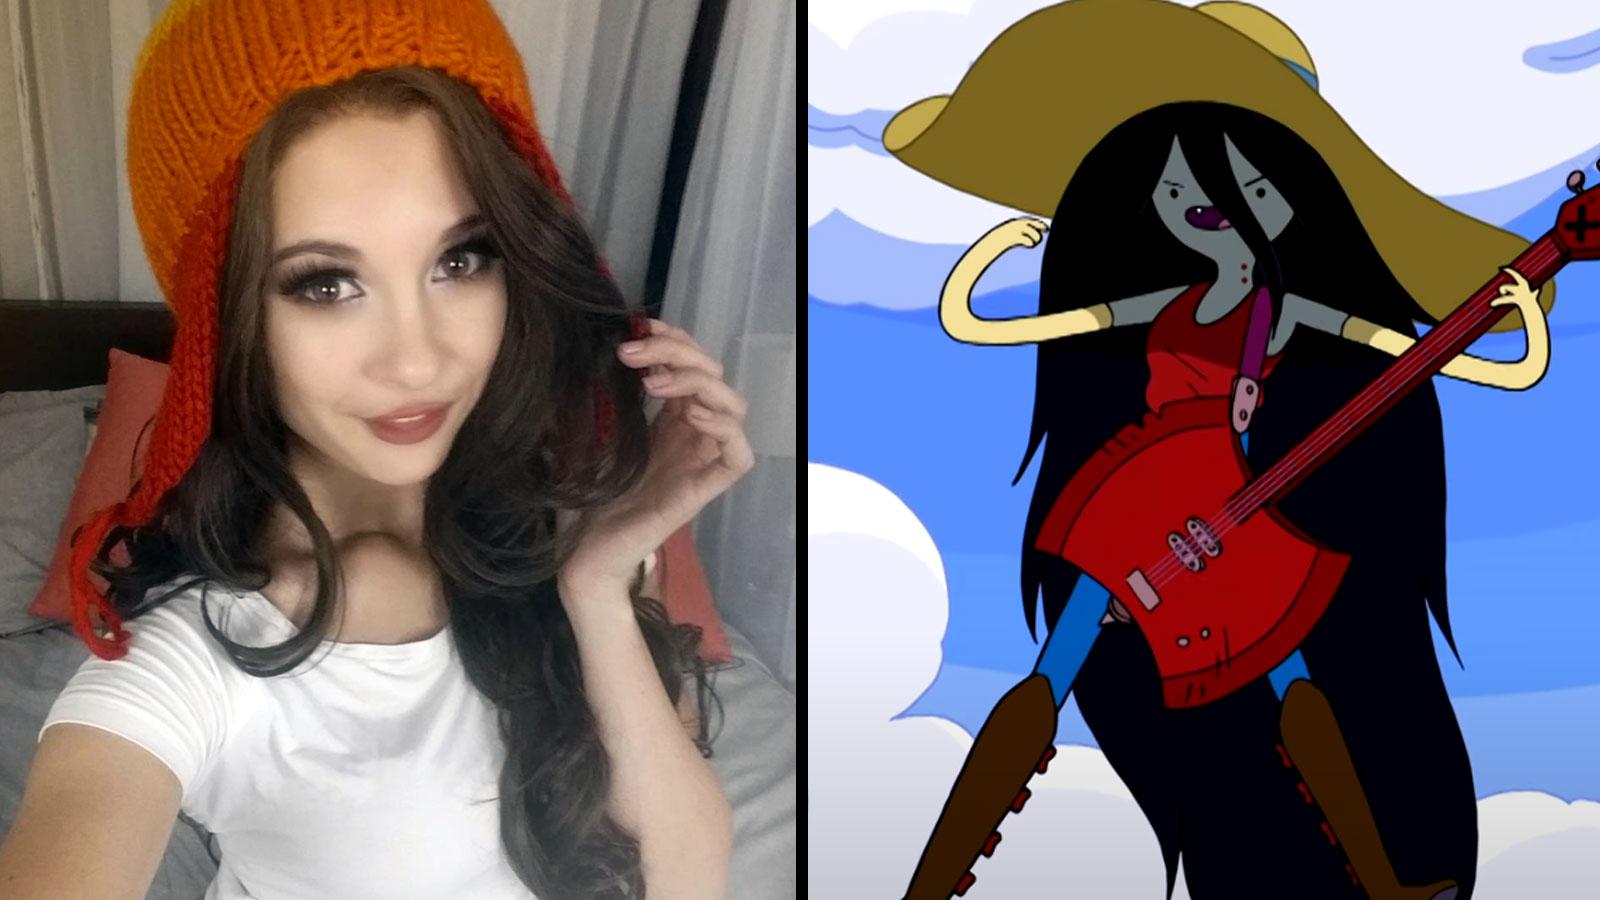 Adventure cosplayer goes viral as epic Marceline the Vampire Queen - Dexerto